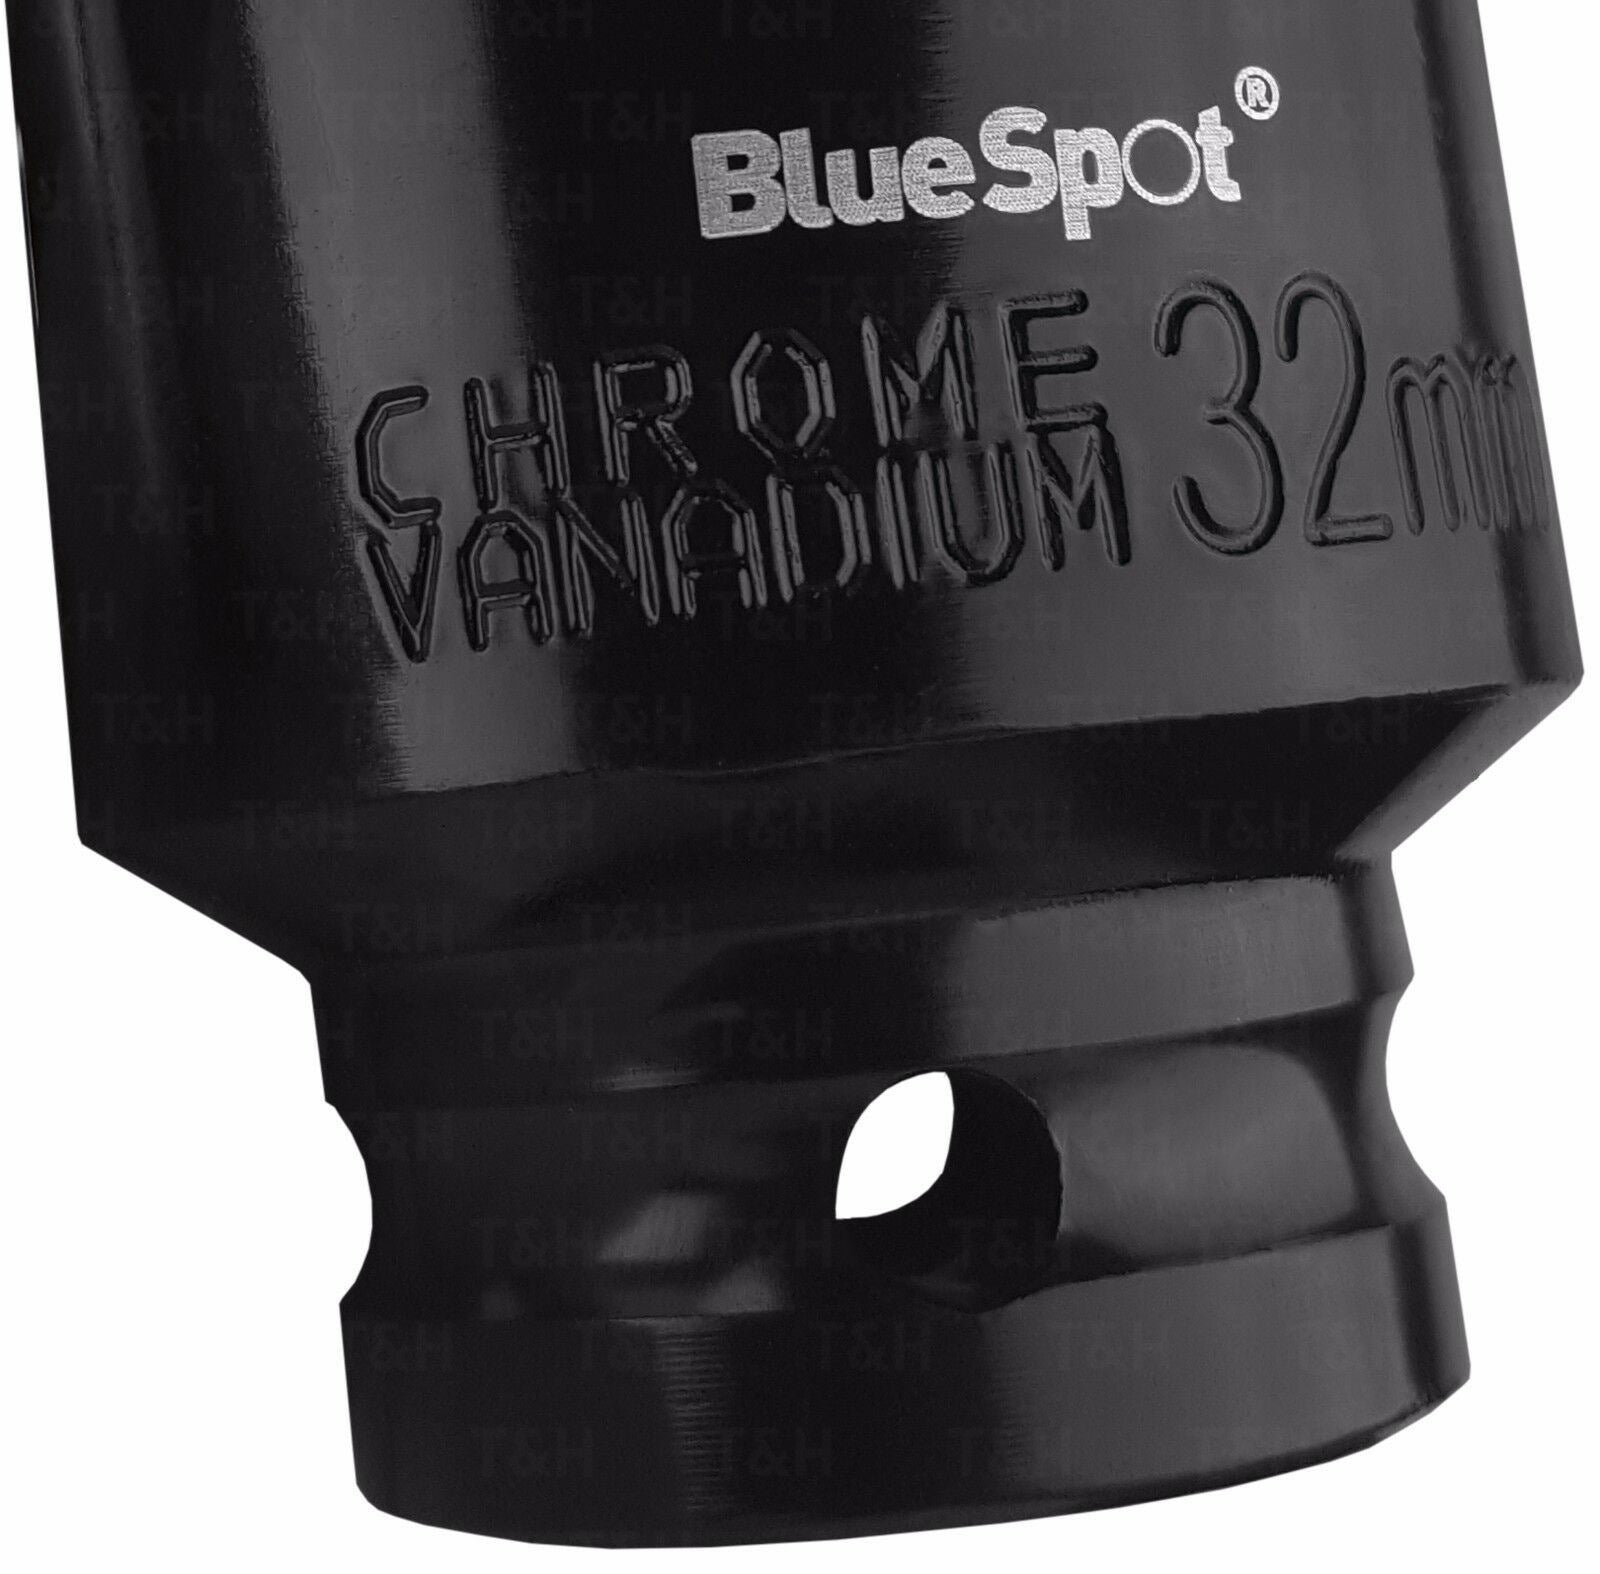 BLUESPOT 1/2" Drive 6 Point 13 Piece DEEP IMPACT Socket Set 13mm - 32mm